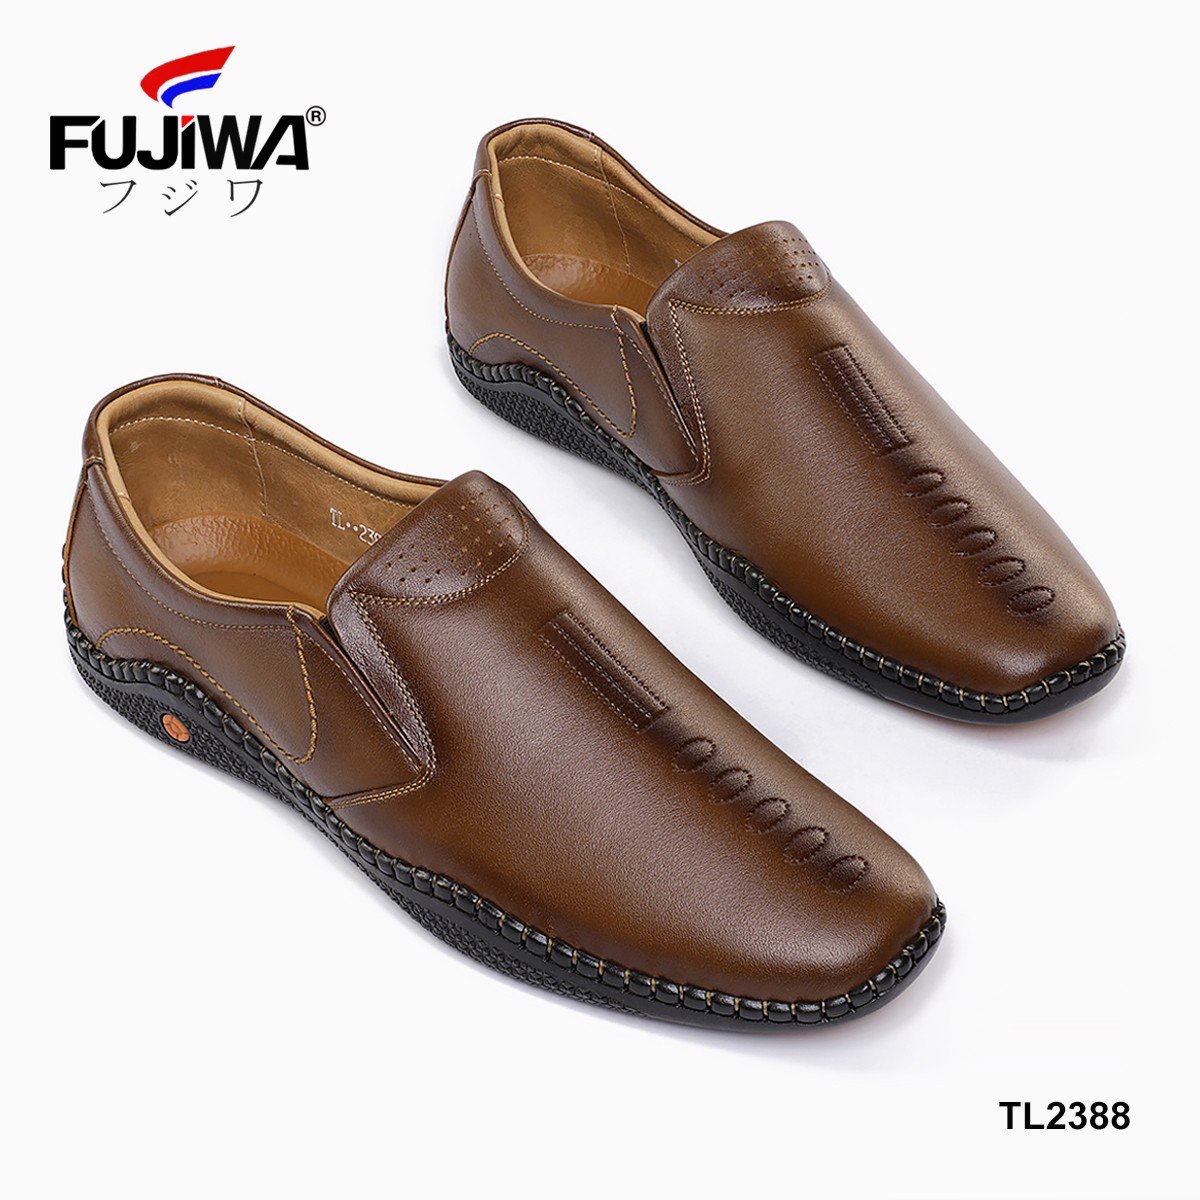 Giày Lười Giày Da Nam Cao Cấp Da Bò Fujiwa - TL2388. Da bò cao cấp, đế cao su tạo độ bám tốt, bền bỉ theo thời gian